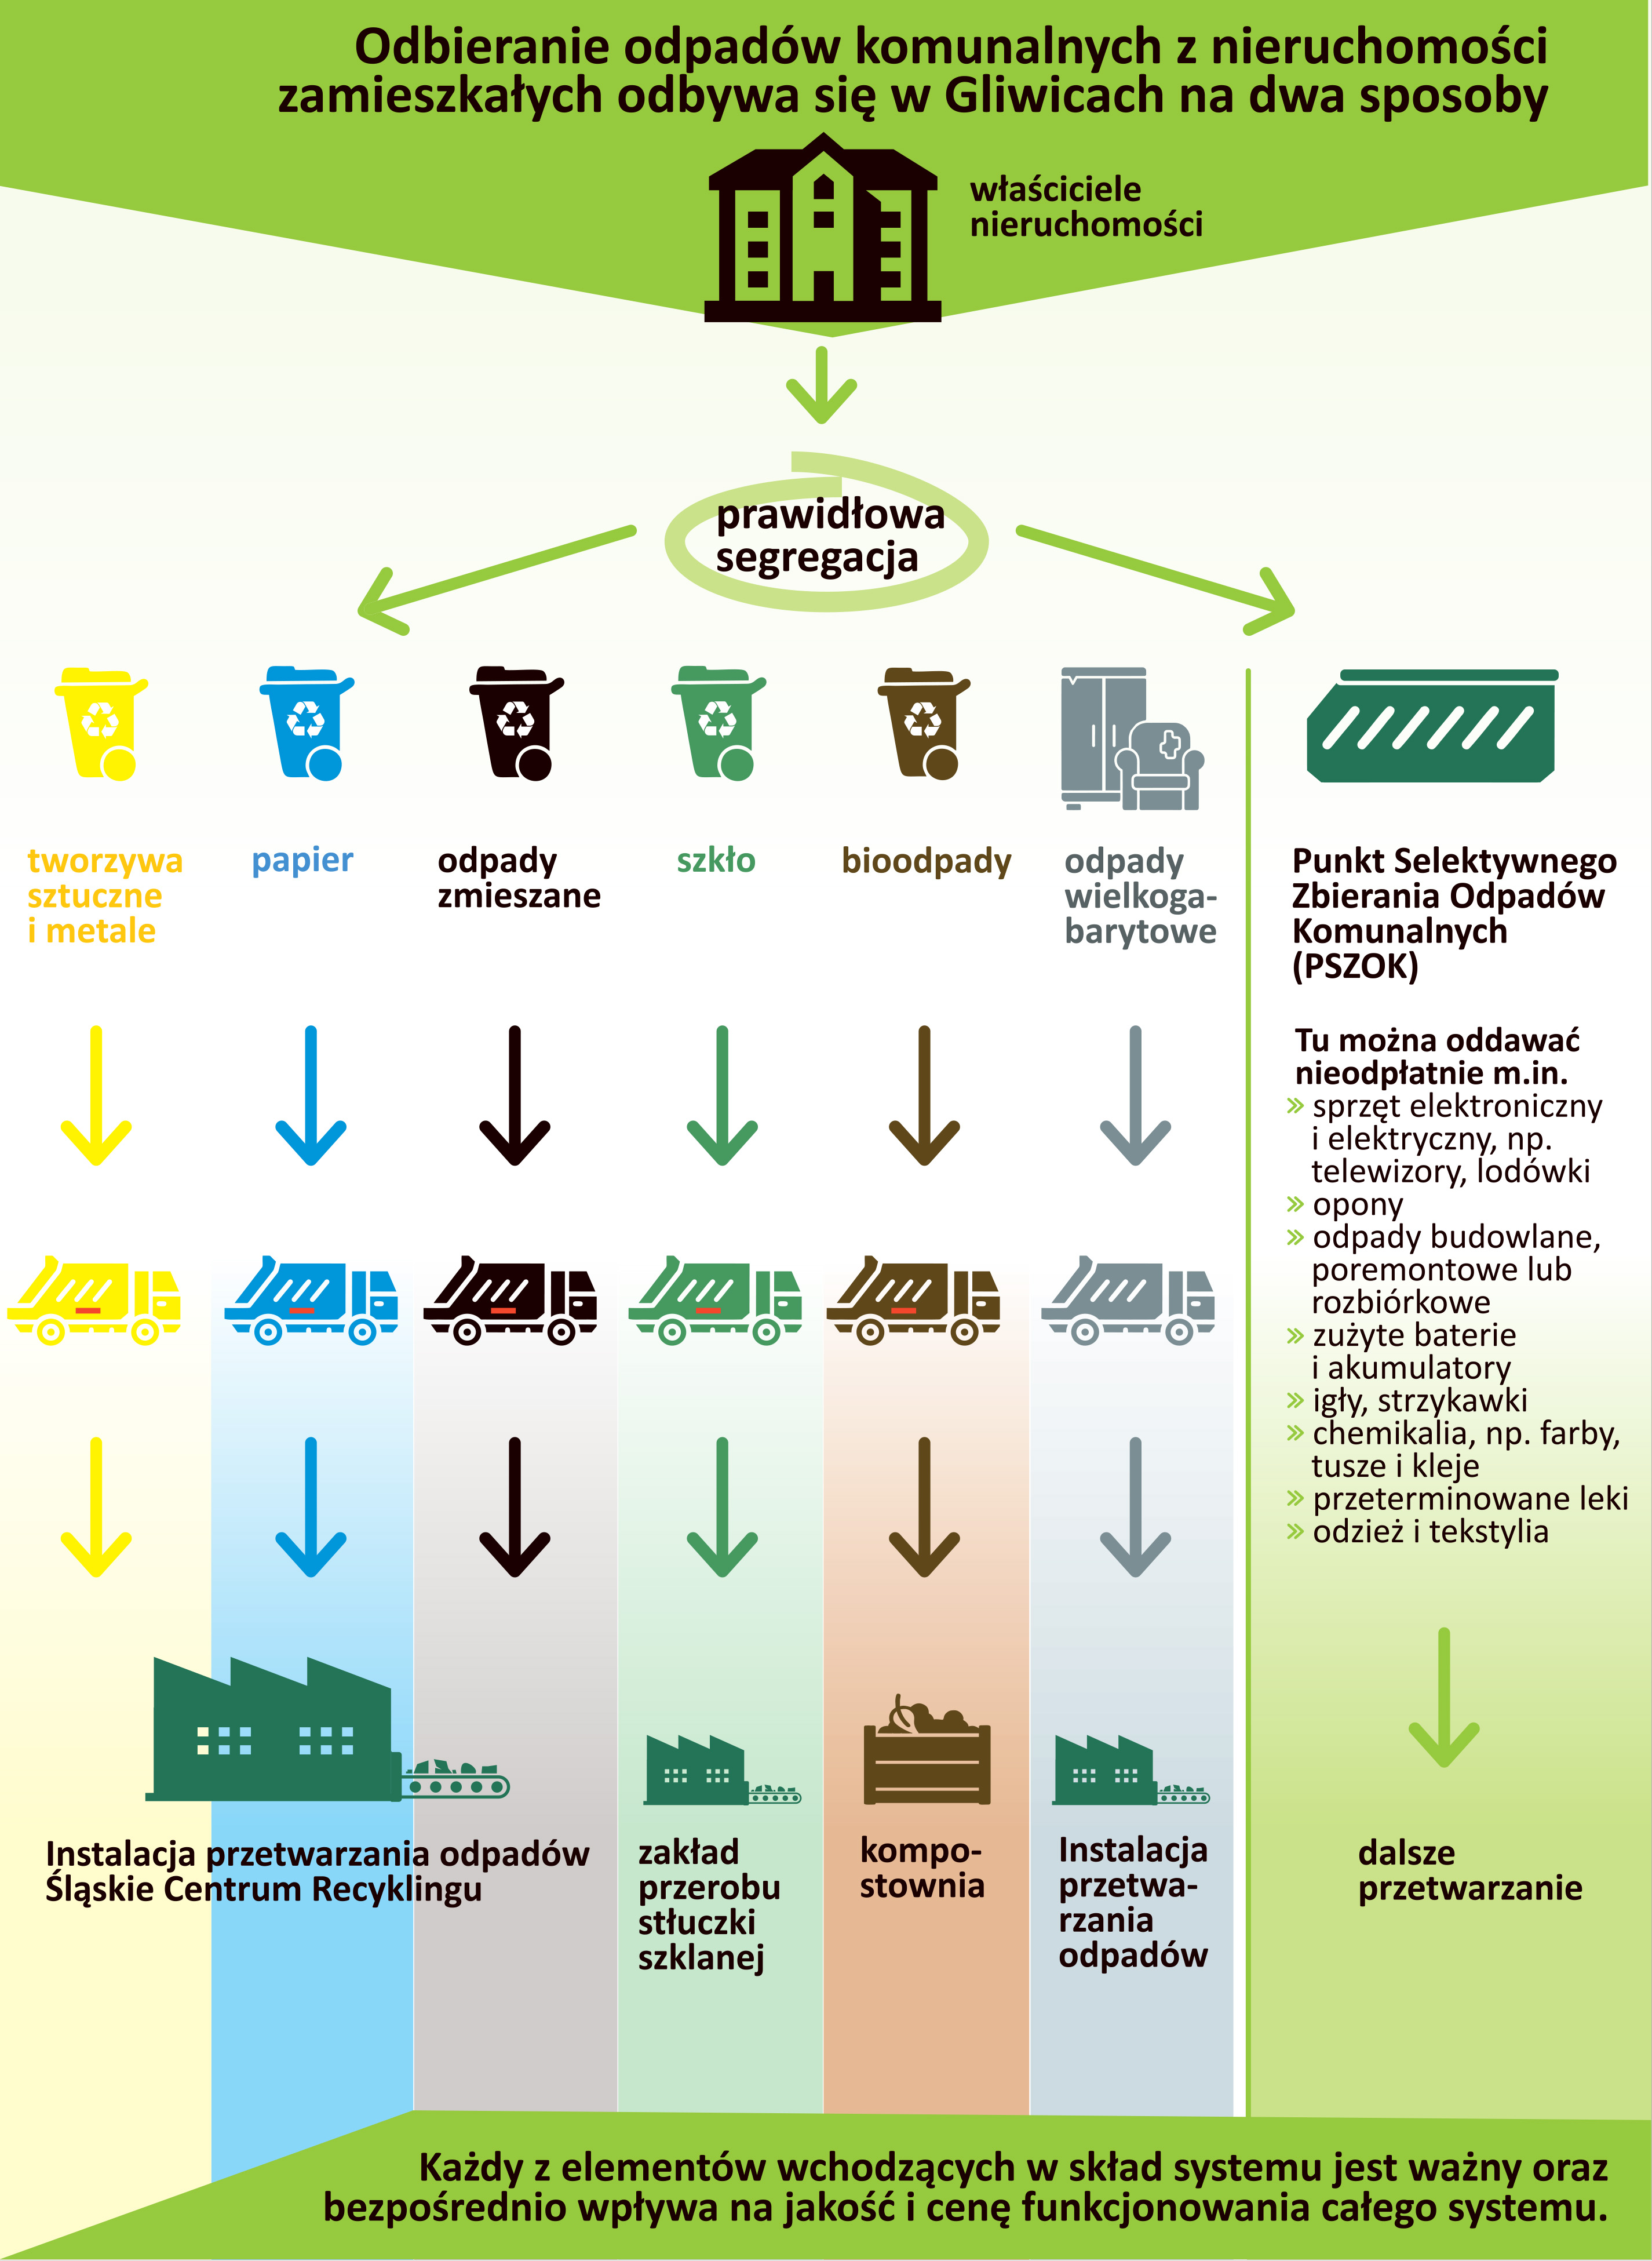 grafika pokazująca sposób gospodarowania odpadami w Gliwicach